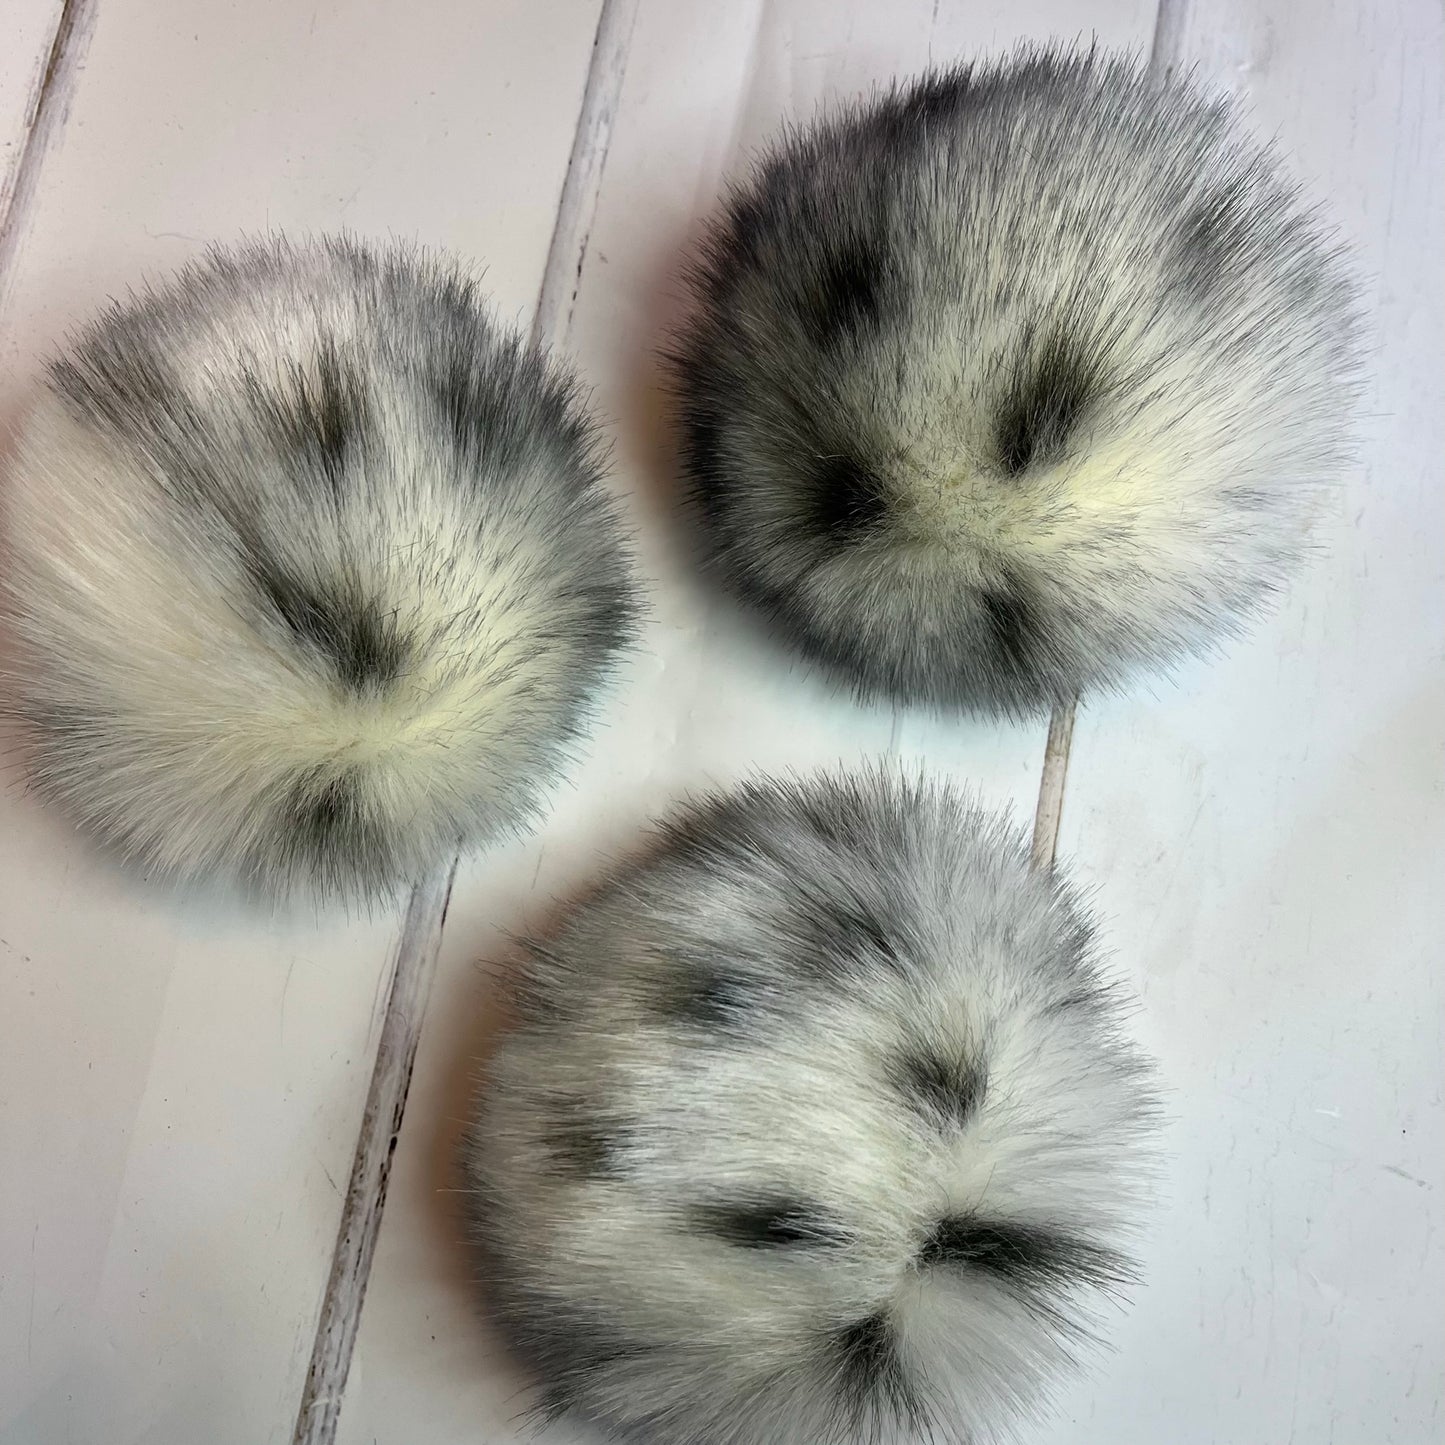 Bobcat handmade faux fur pom pom. Detachable option